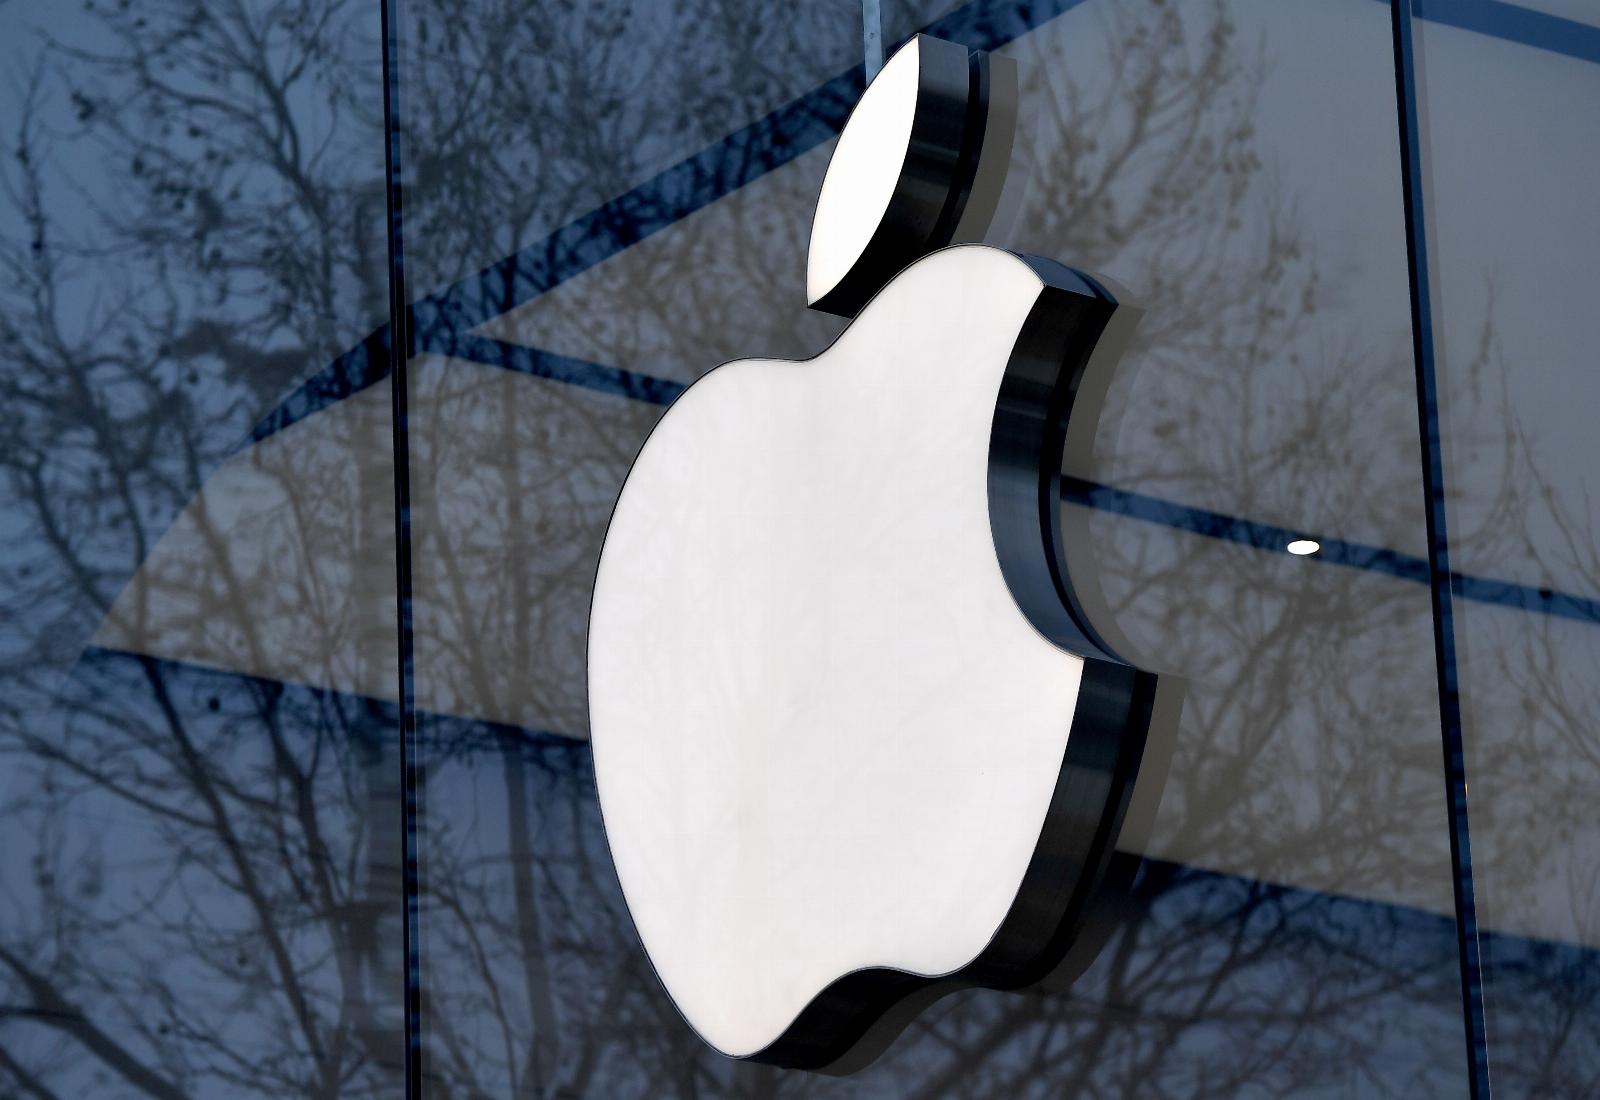 Apple wins antitrust court battle with Epic Games, appeals court rules